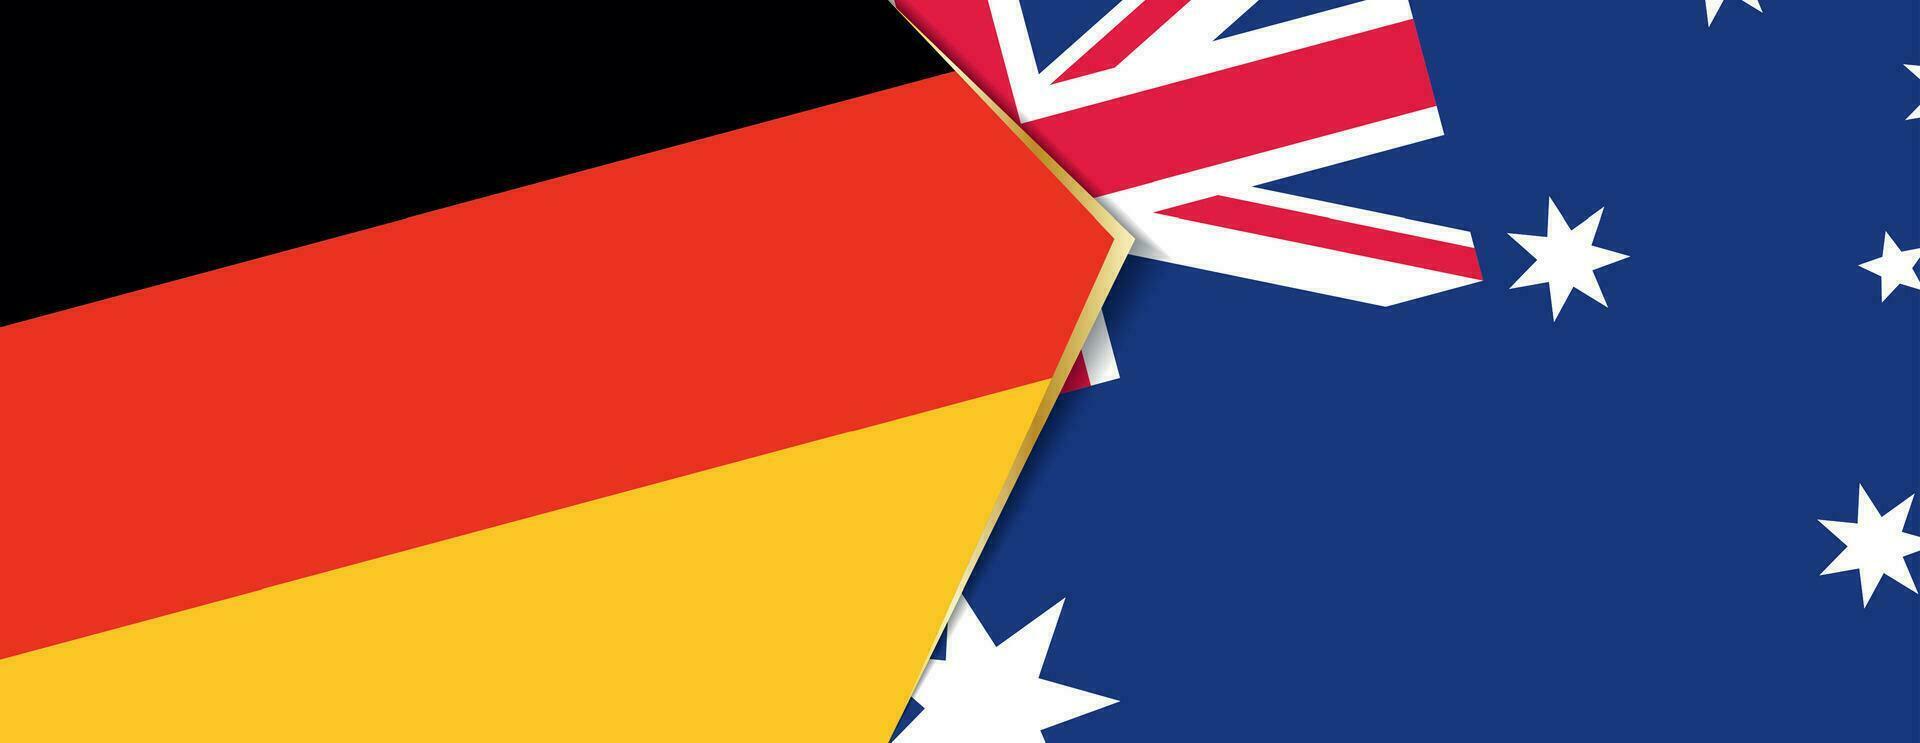 Tyskland och Australien flaggor, två vektor flaggor.